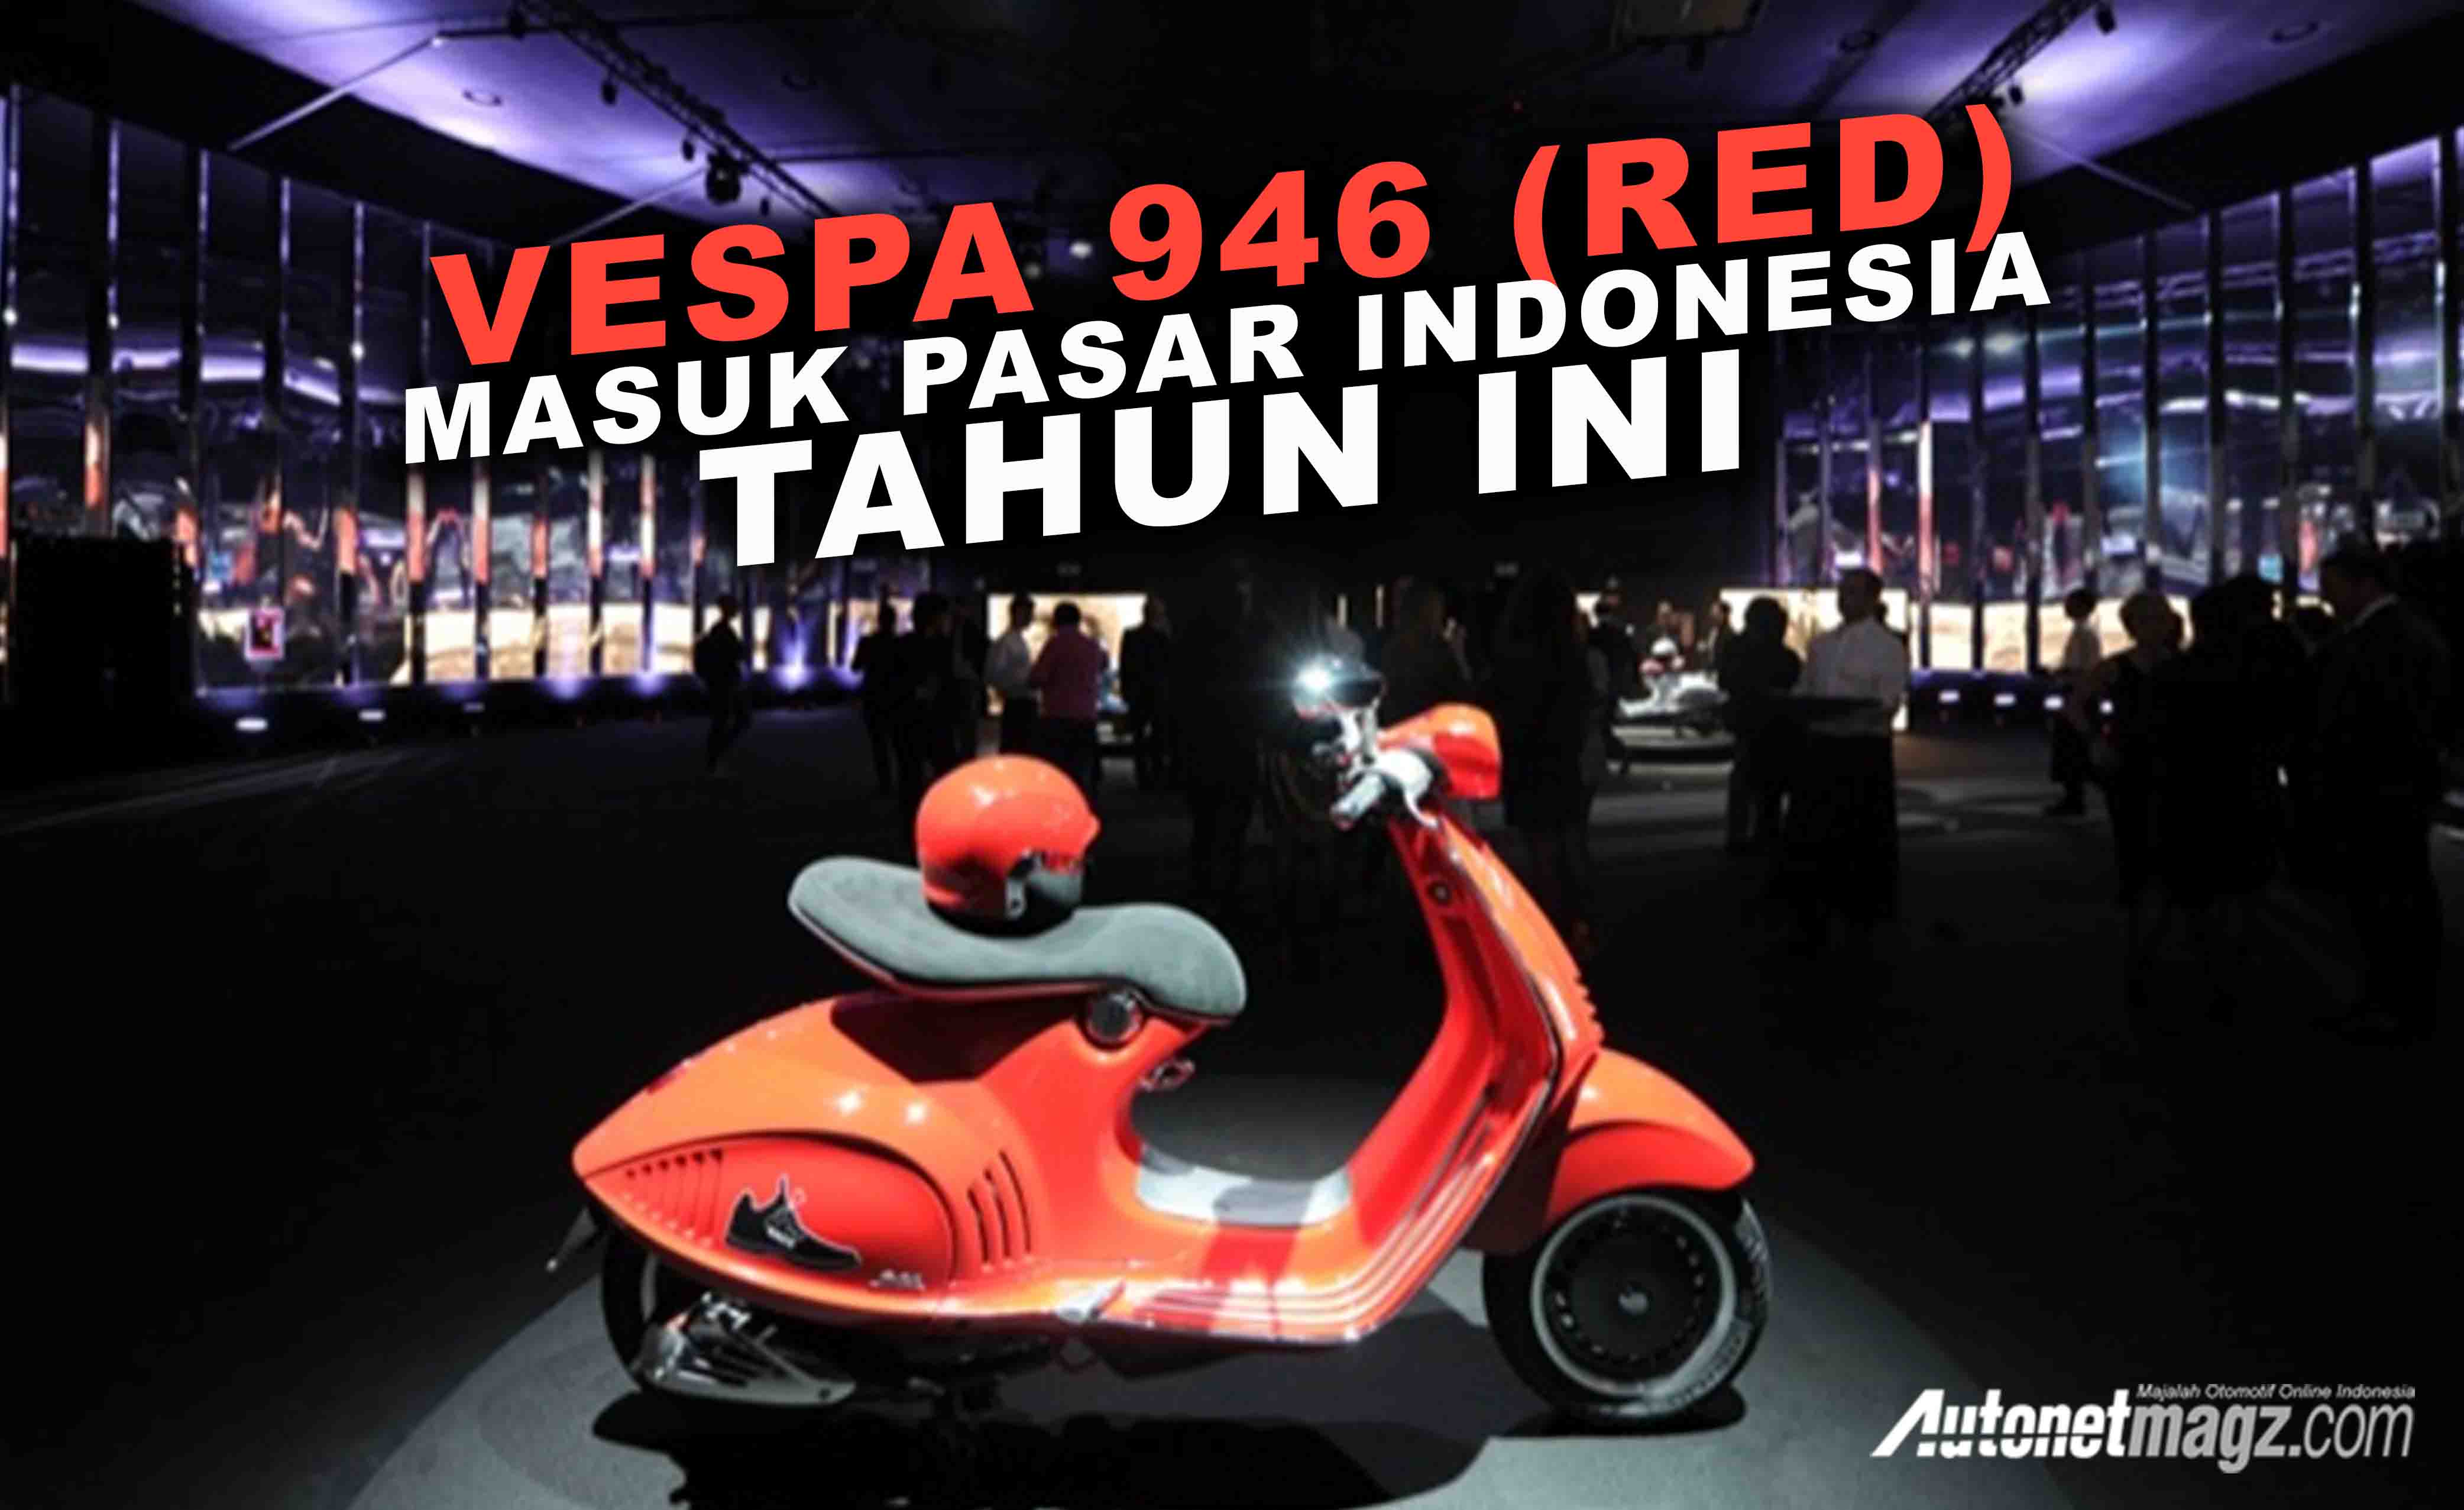 Berita, cover vespa 94 red: Vespa 946 (RED) Akan Masuk Ke Pasar Indonesia Tahun Ini